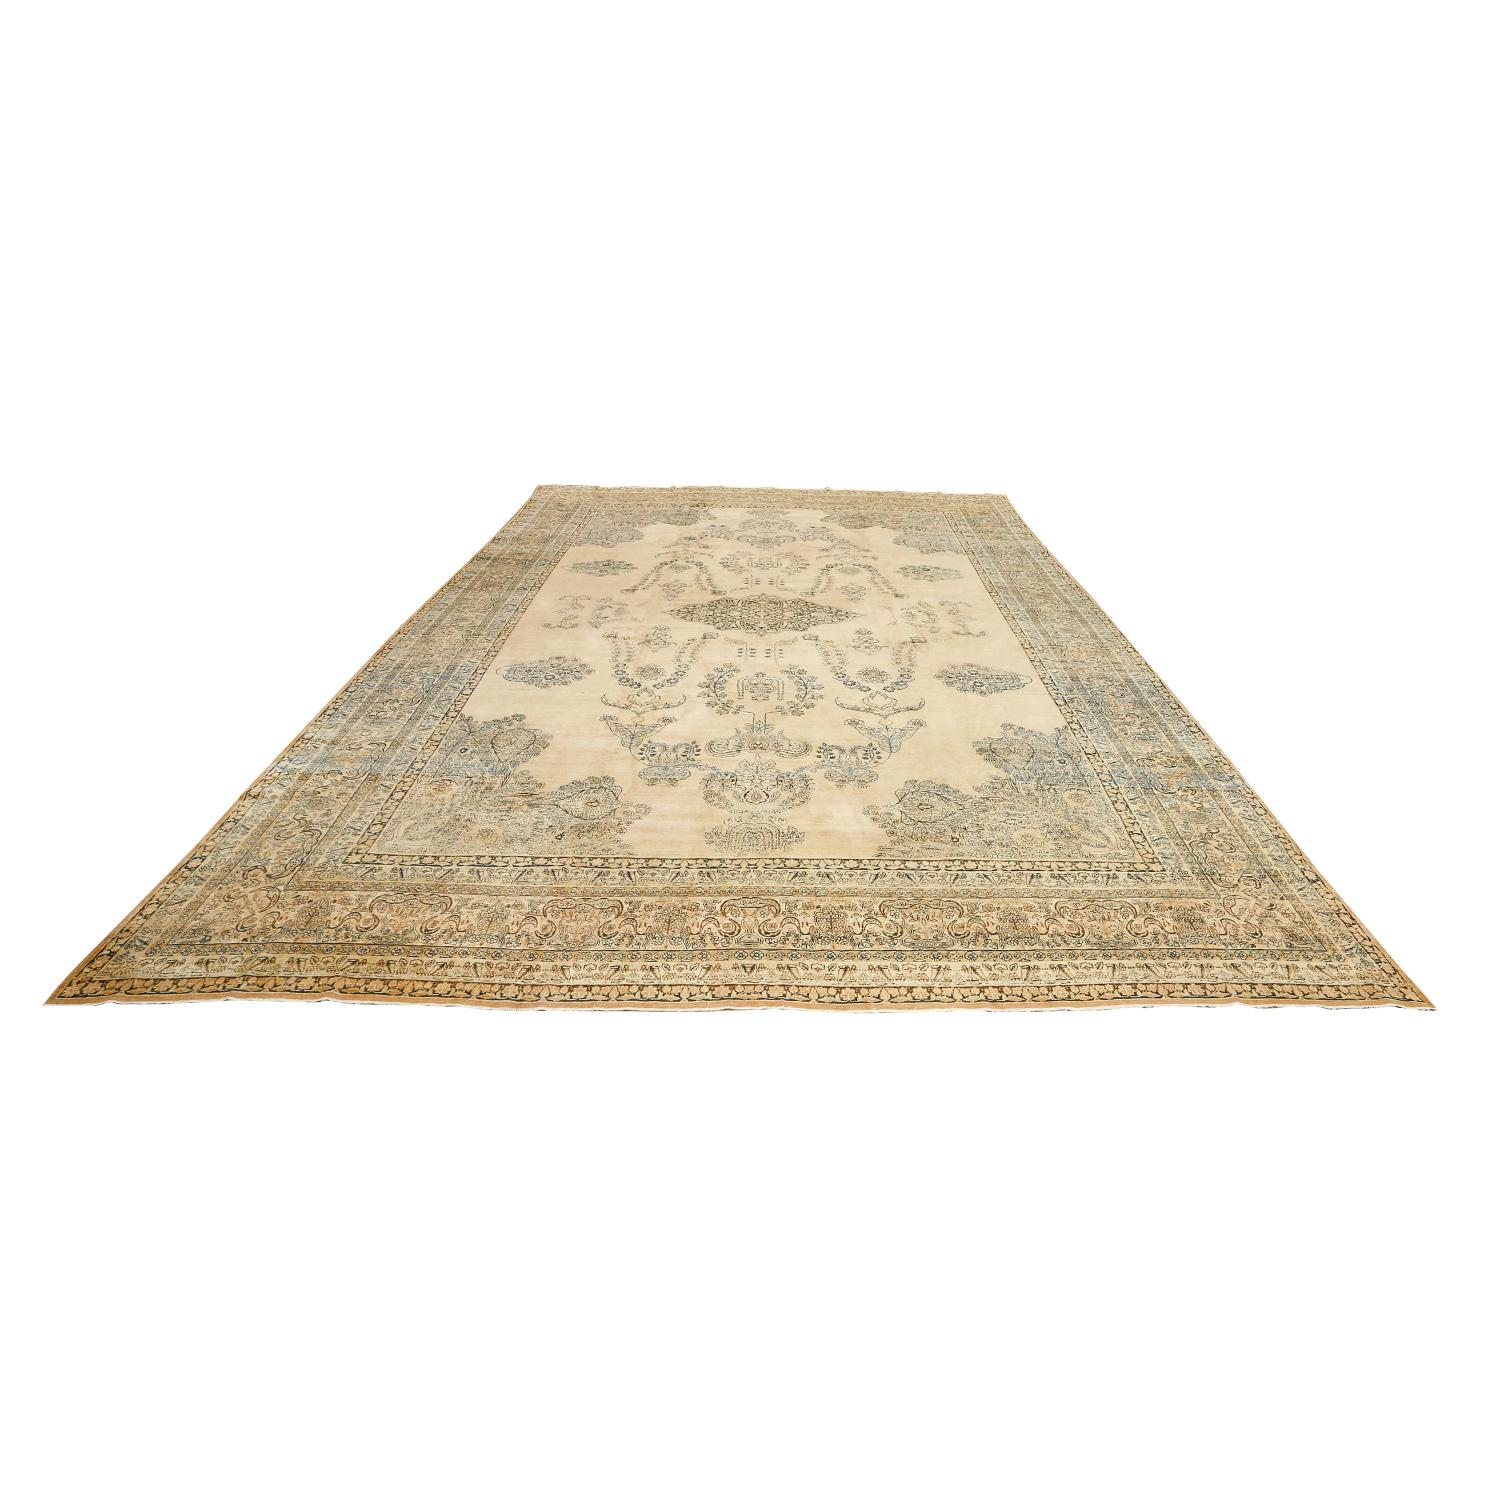 Dieser antike Lavar-Teppich mit einem Medaillon in der Mitte ist ein fesselndes Symbol für dauerhafte Schönheit und sorgfältige Handwerkskunst. Diese Teppiche stammen aus der geschätzten Weberei-Region Lavar in Persien und werden für ihre exquisiten